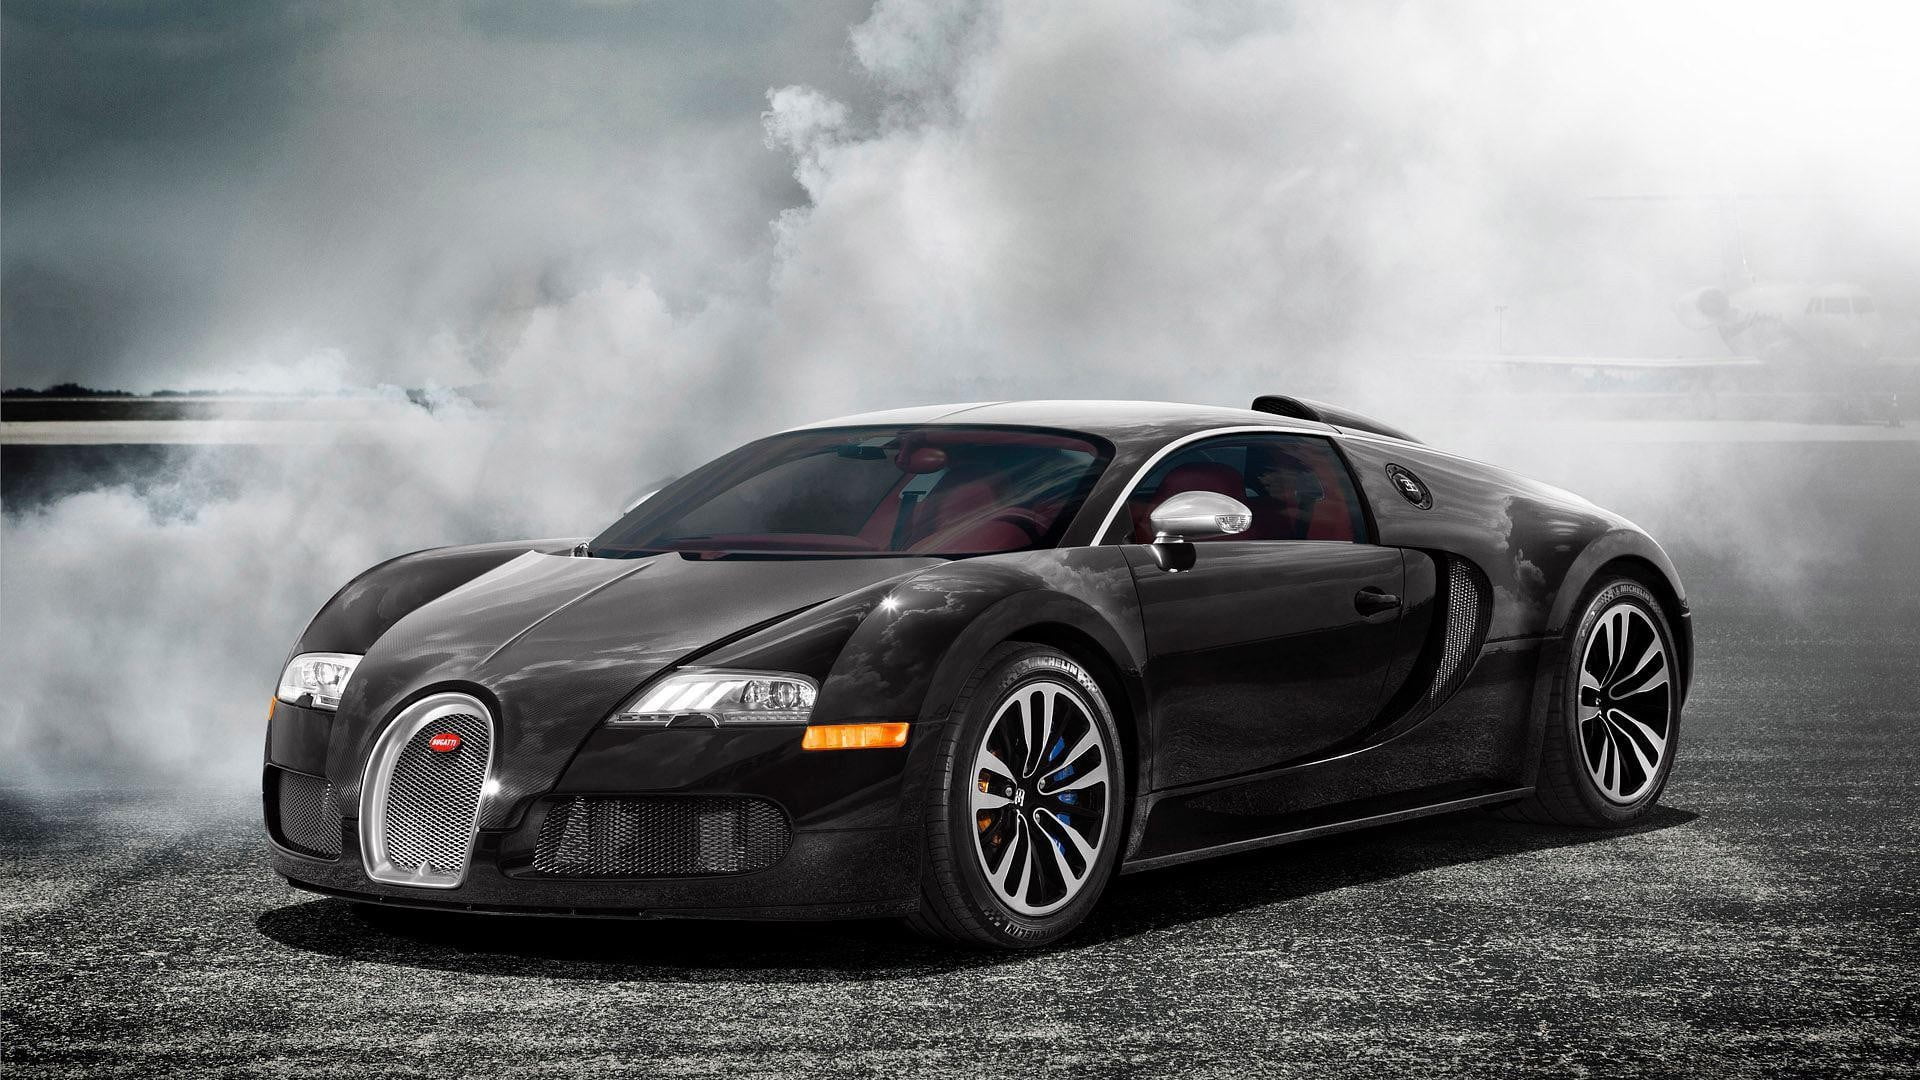 black Bugatti Veyron coupe, car, motor vehicle, mode of transportation